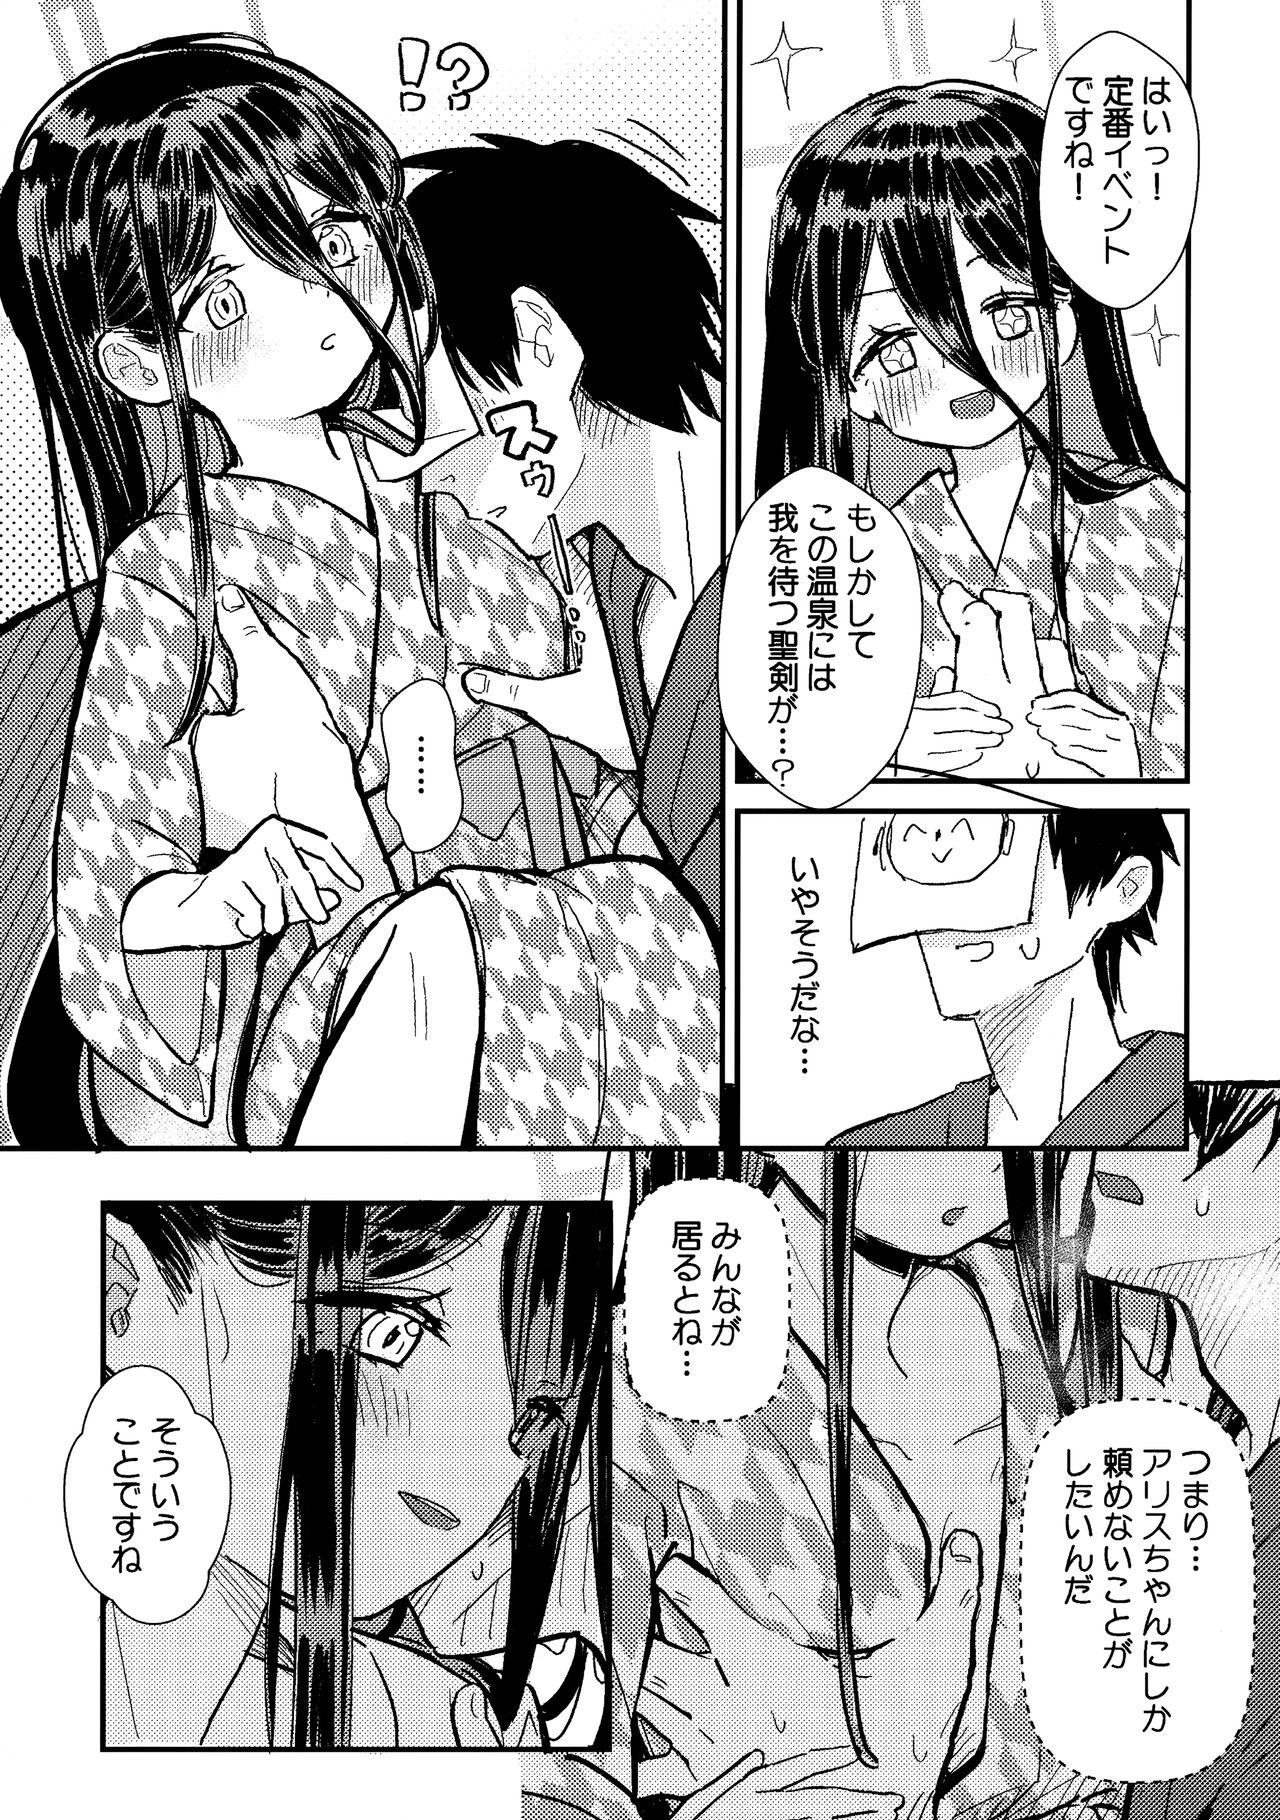 Belly Sensei no Aka-chan Milk wa Alice no Jinkou Shikyuu de Atatamemasu! - Blue archive Stepdad - Page 4